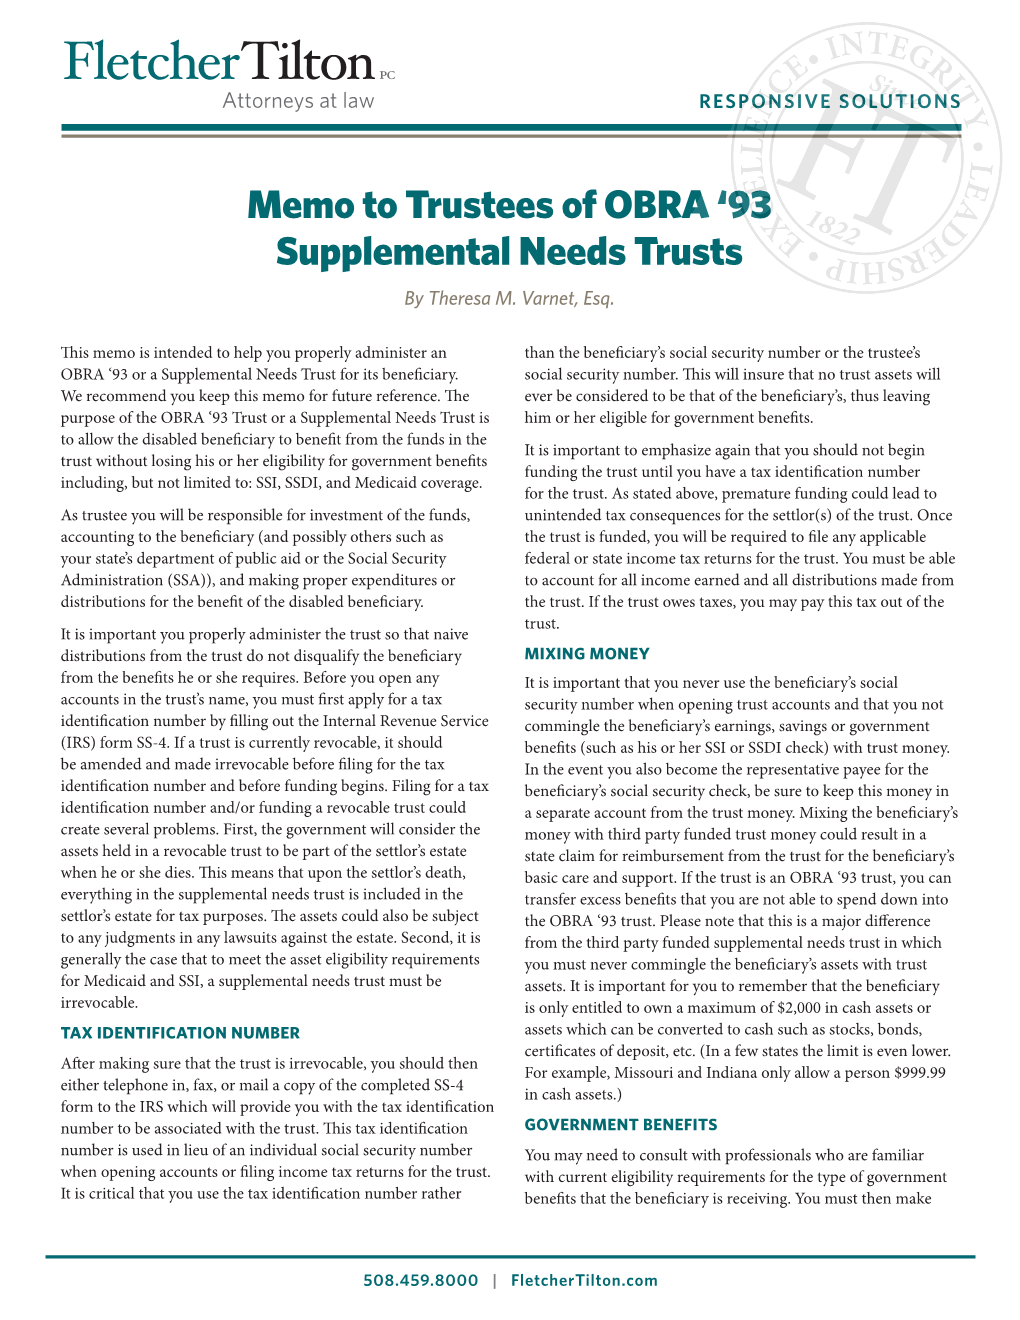 Memo to Trustees of OBRA '93 Supplemental Needs Trusts